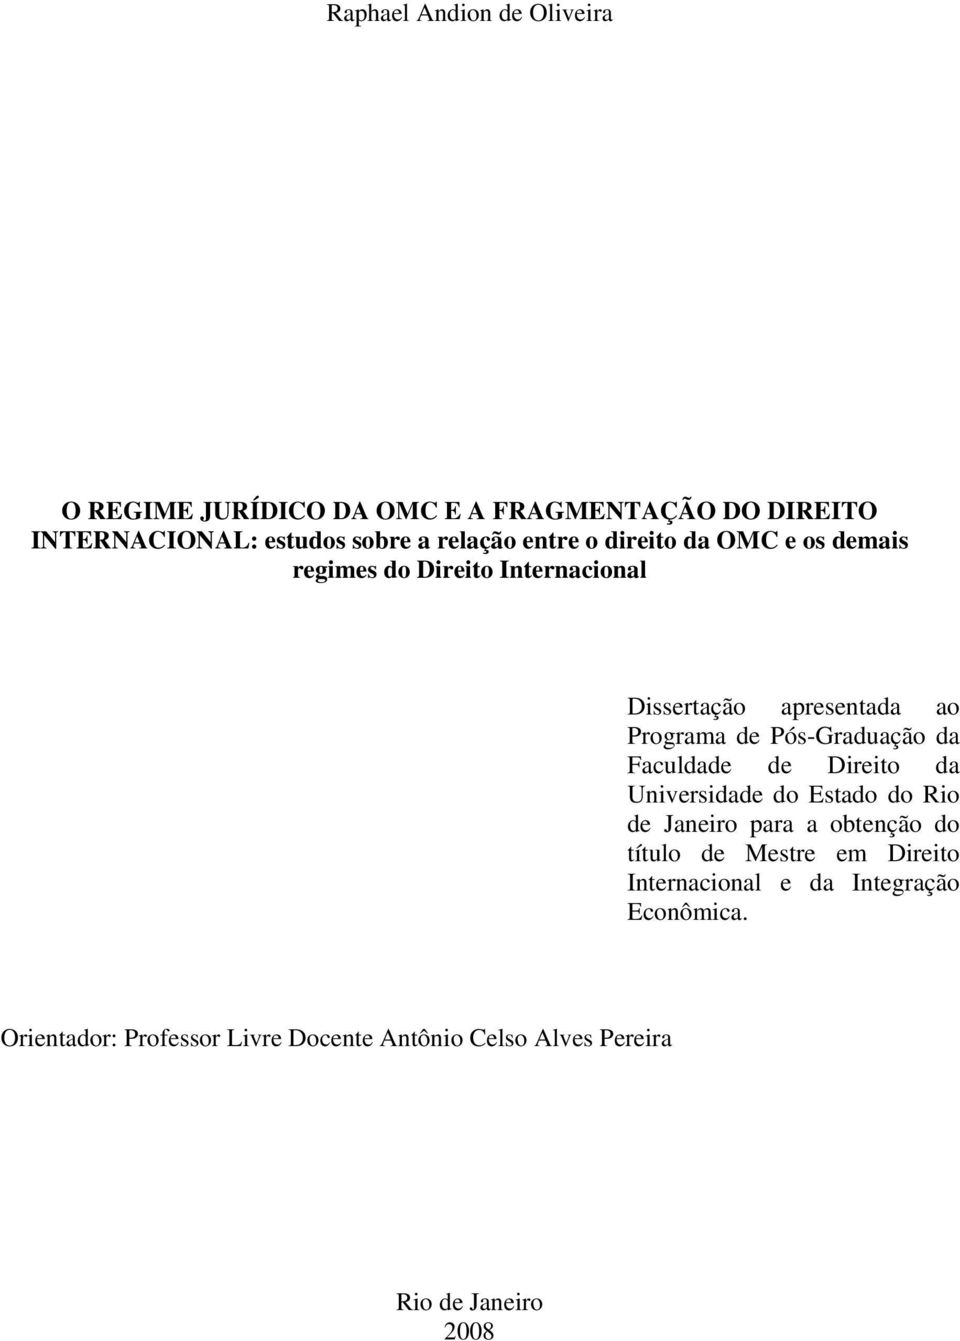 Pós-Graduação da Faculdade de Direito da Universidade do Estado do Rio de Janeiro para a obtenção do título de Mestre